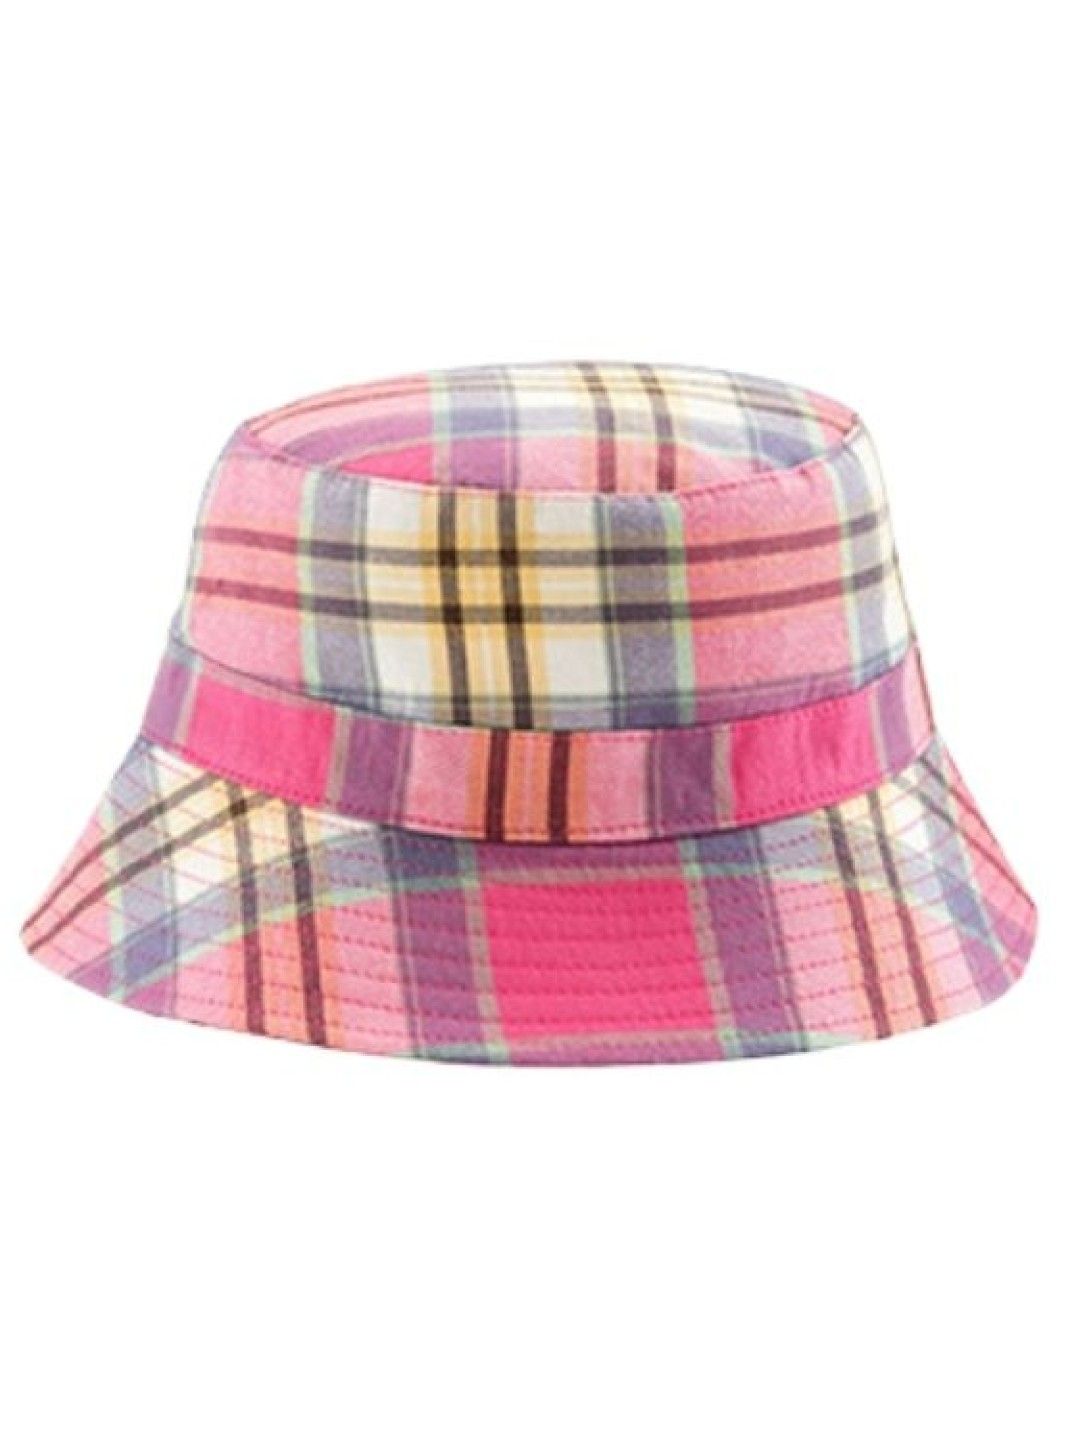 Banz Bucket Sun Hats